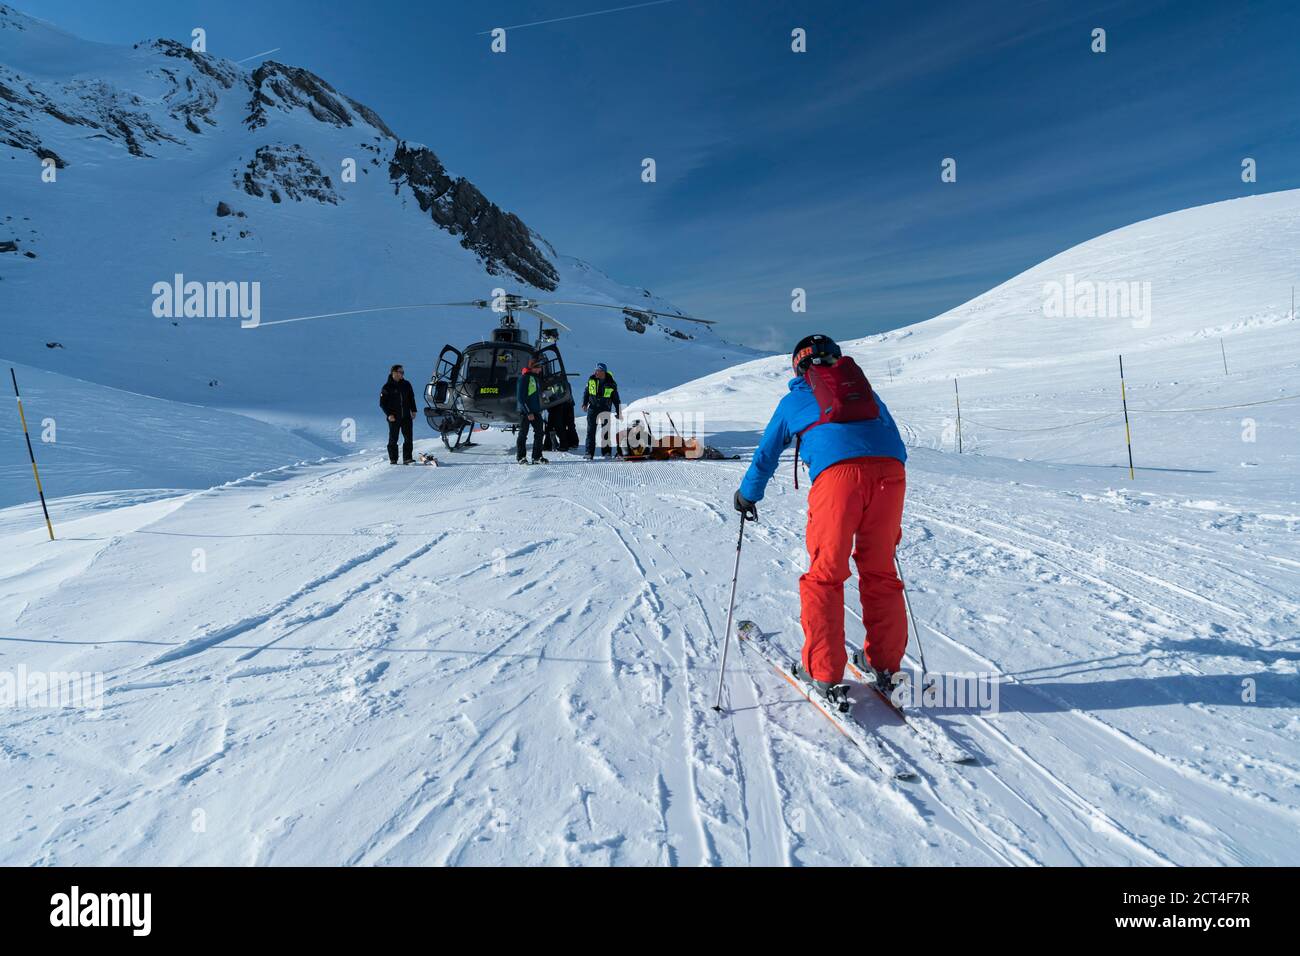 Équipe de sauvetage en montagne avec hélicoptère pour sauver un skieur blessé dans une civière après avoir eu un accident de ski dans les Alpes, à Avoriaz, France, Europe Banque D'Images